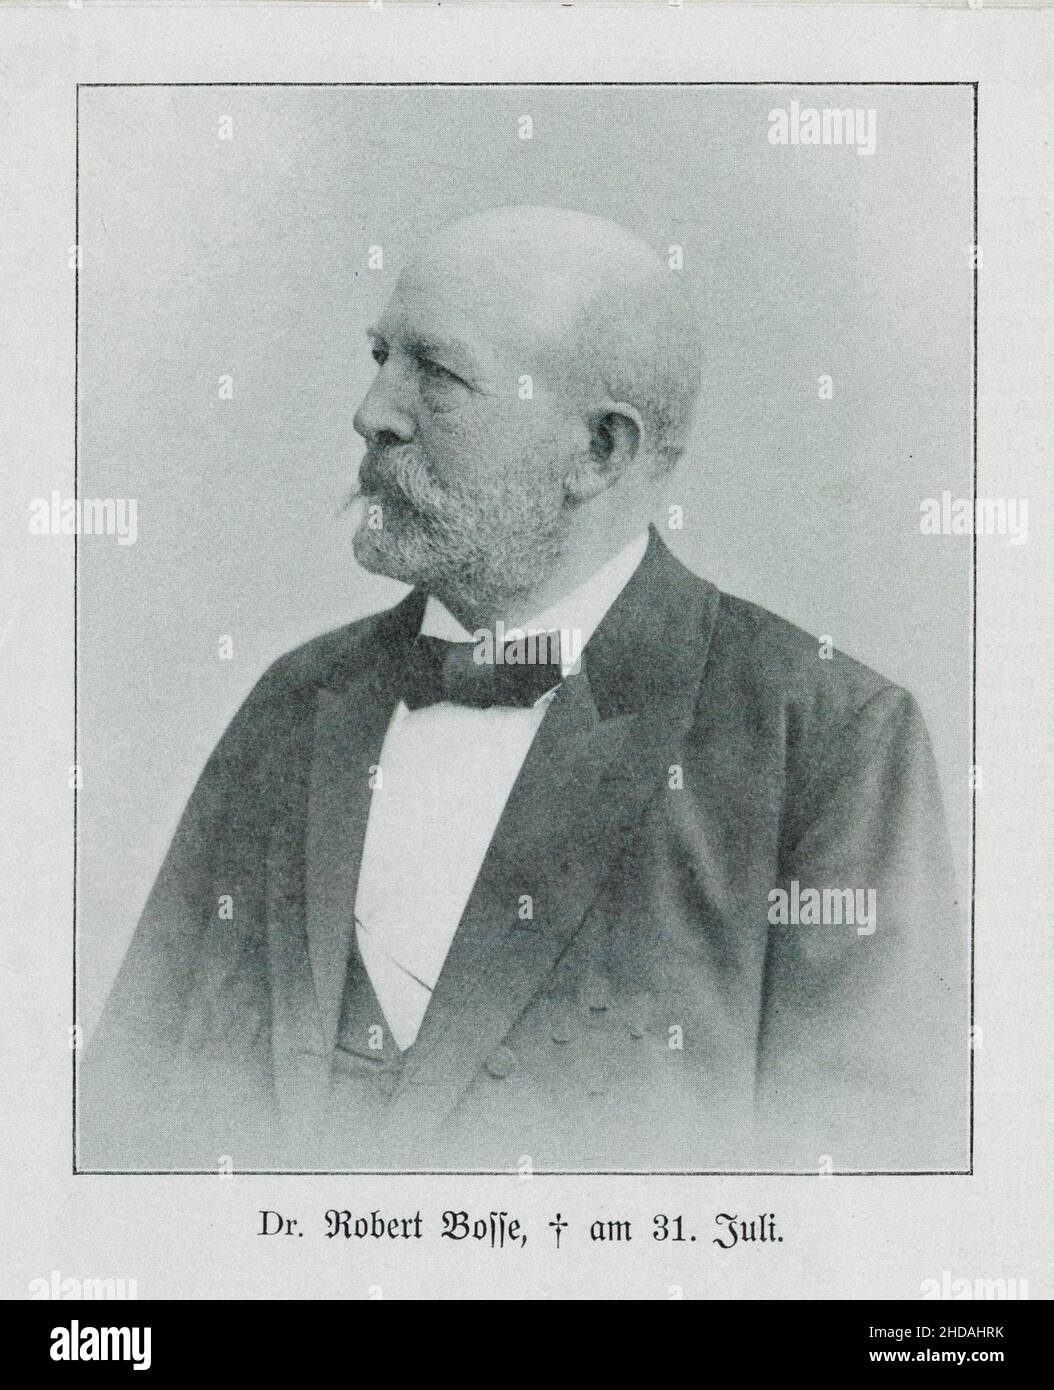 Retrato clásico de Julius Robert Bosse, 1901 Julius Robert Bosse (1832 - 1901) fue un político alemán activo en la reforma social y la legislación social Foto de stock